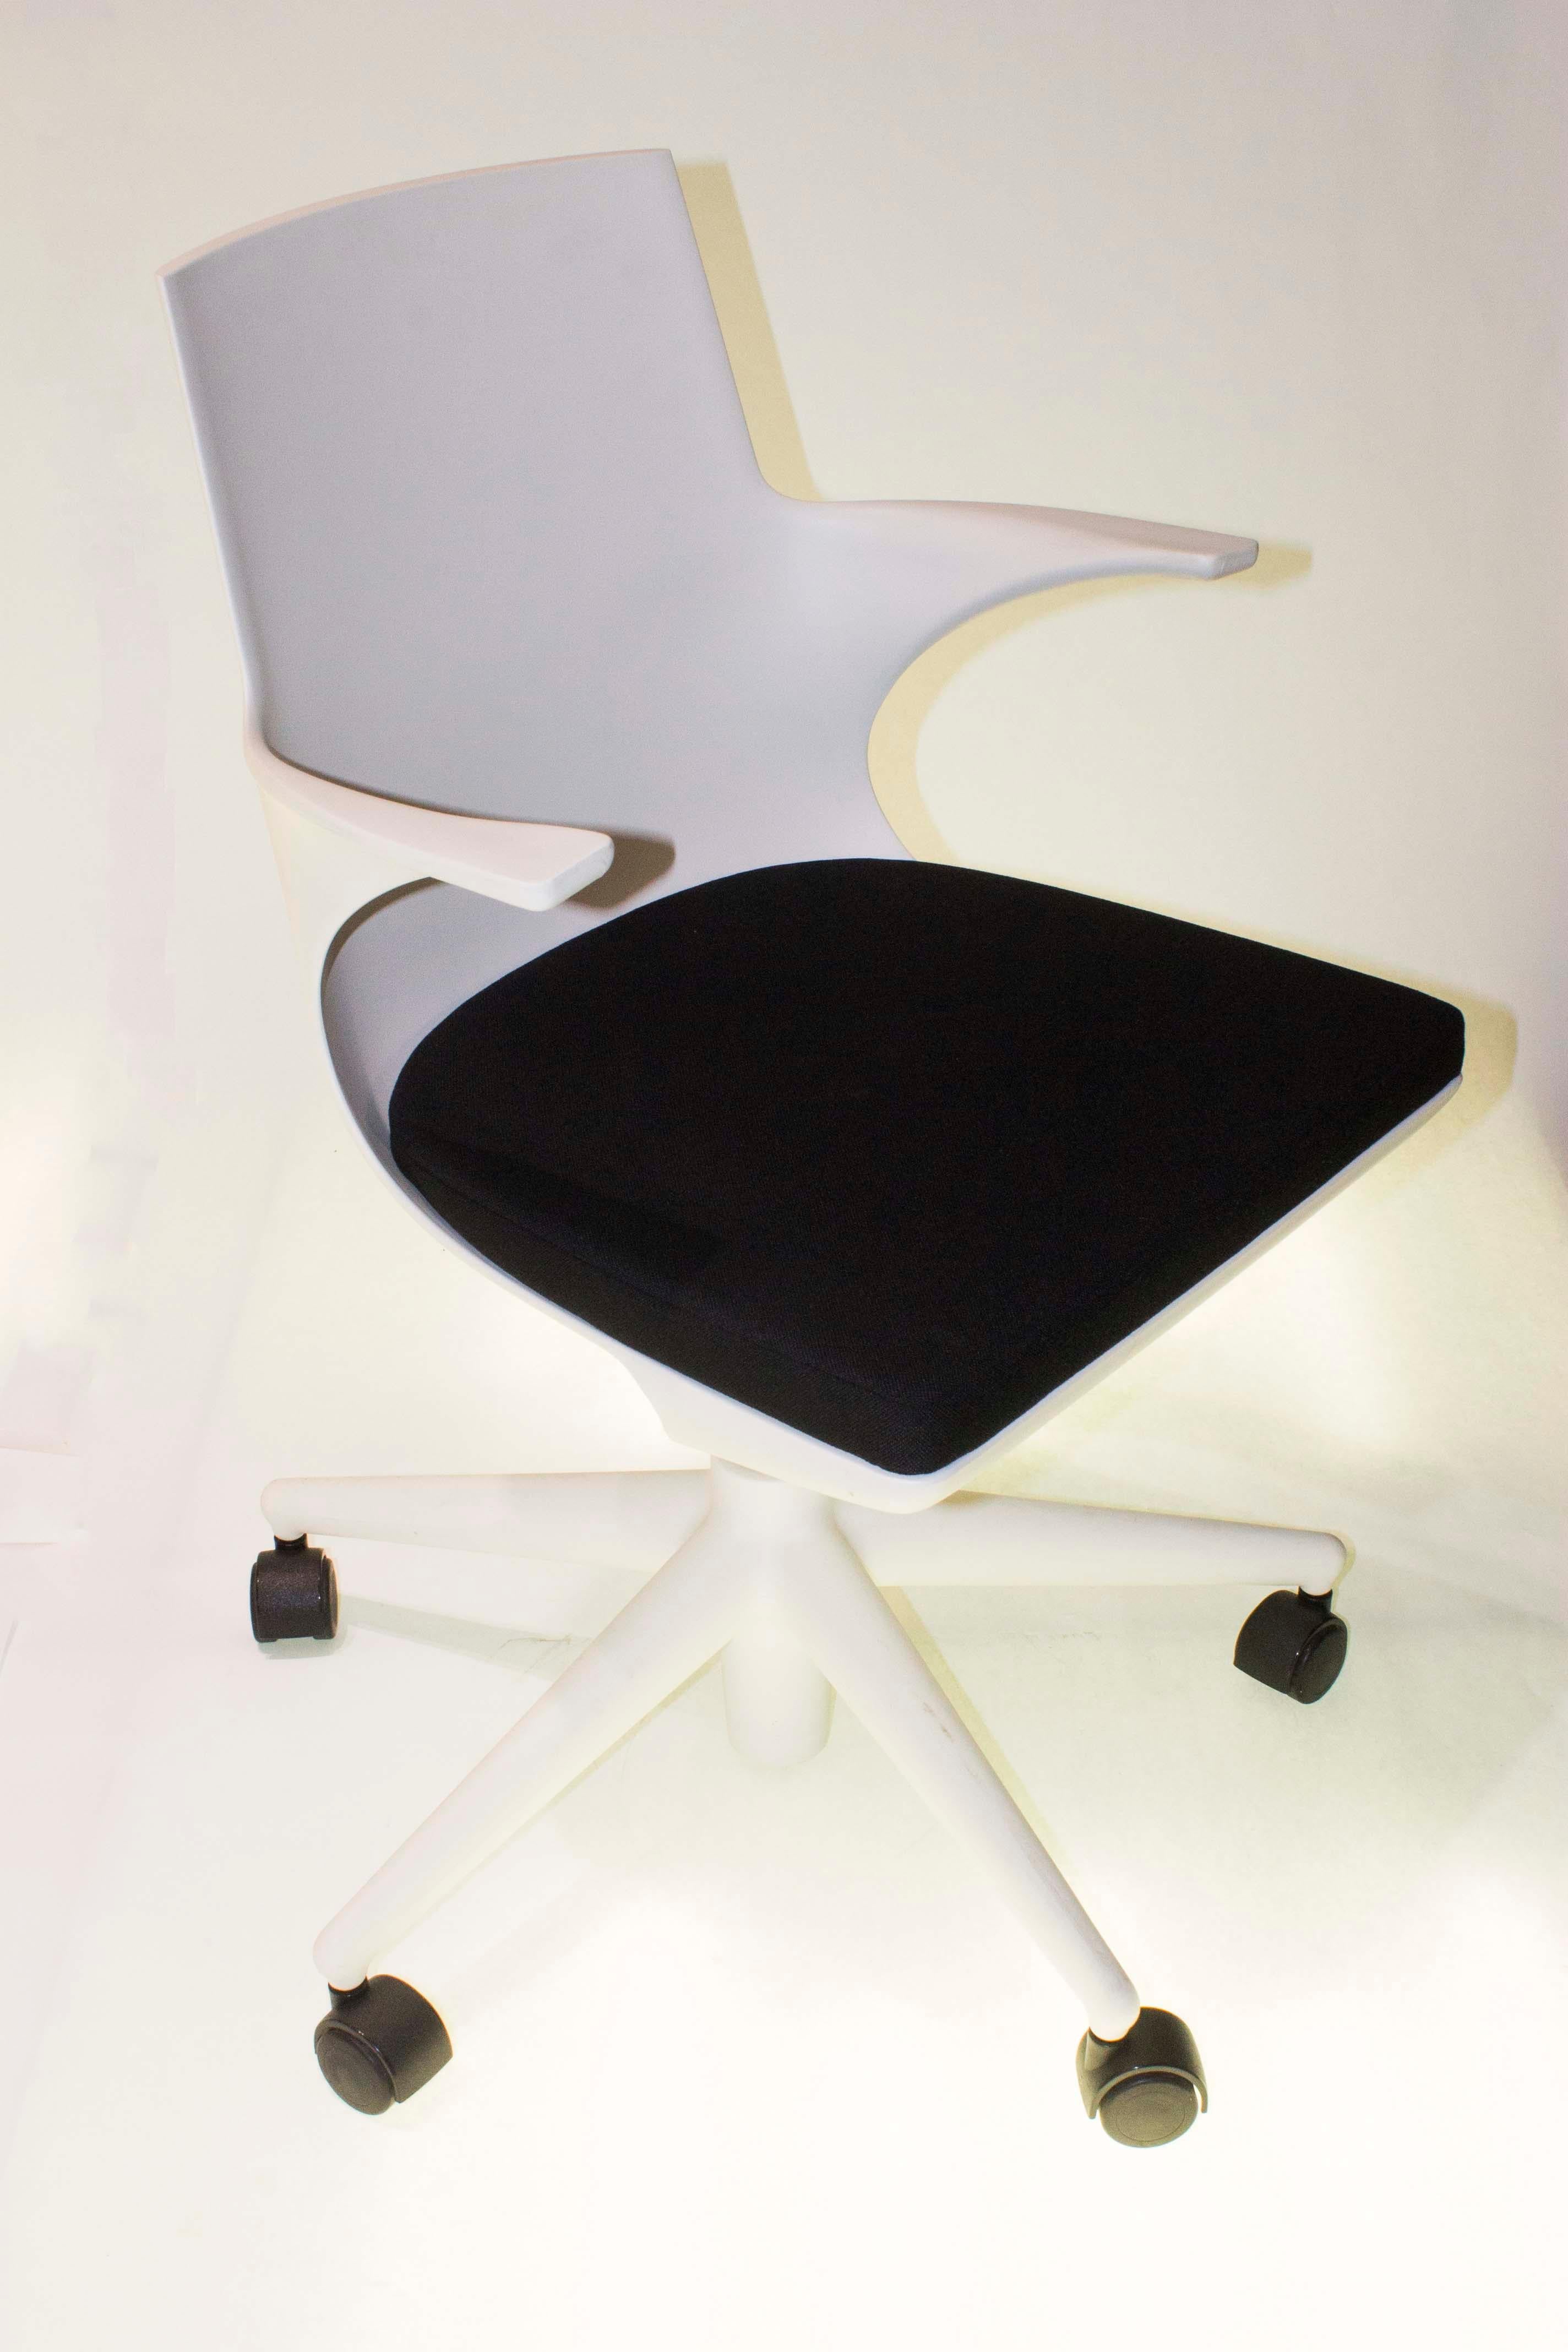 Der leichte Bürostuhl spoon ist das Ergebnis eines völlig avantgardistischen Produktionsprozesses. Die innovative Zweikomponenten-Spritzgusstechnologie, die zur Herstellung dieses Stuhls verwendet wird, erzeugt ein 